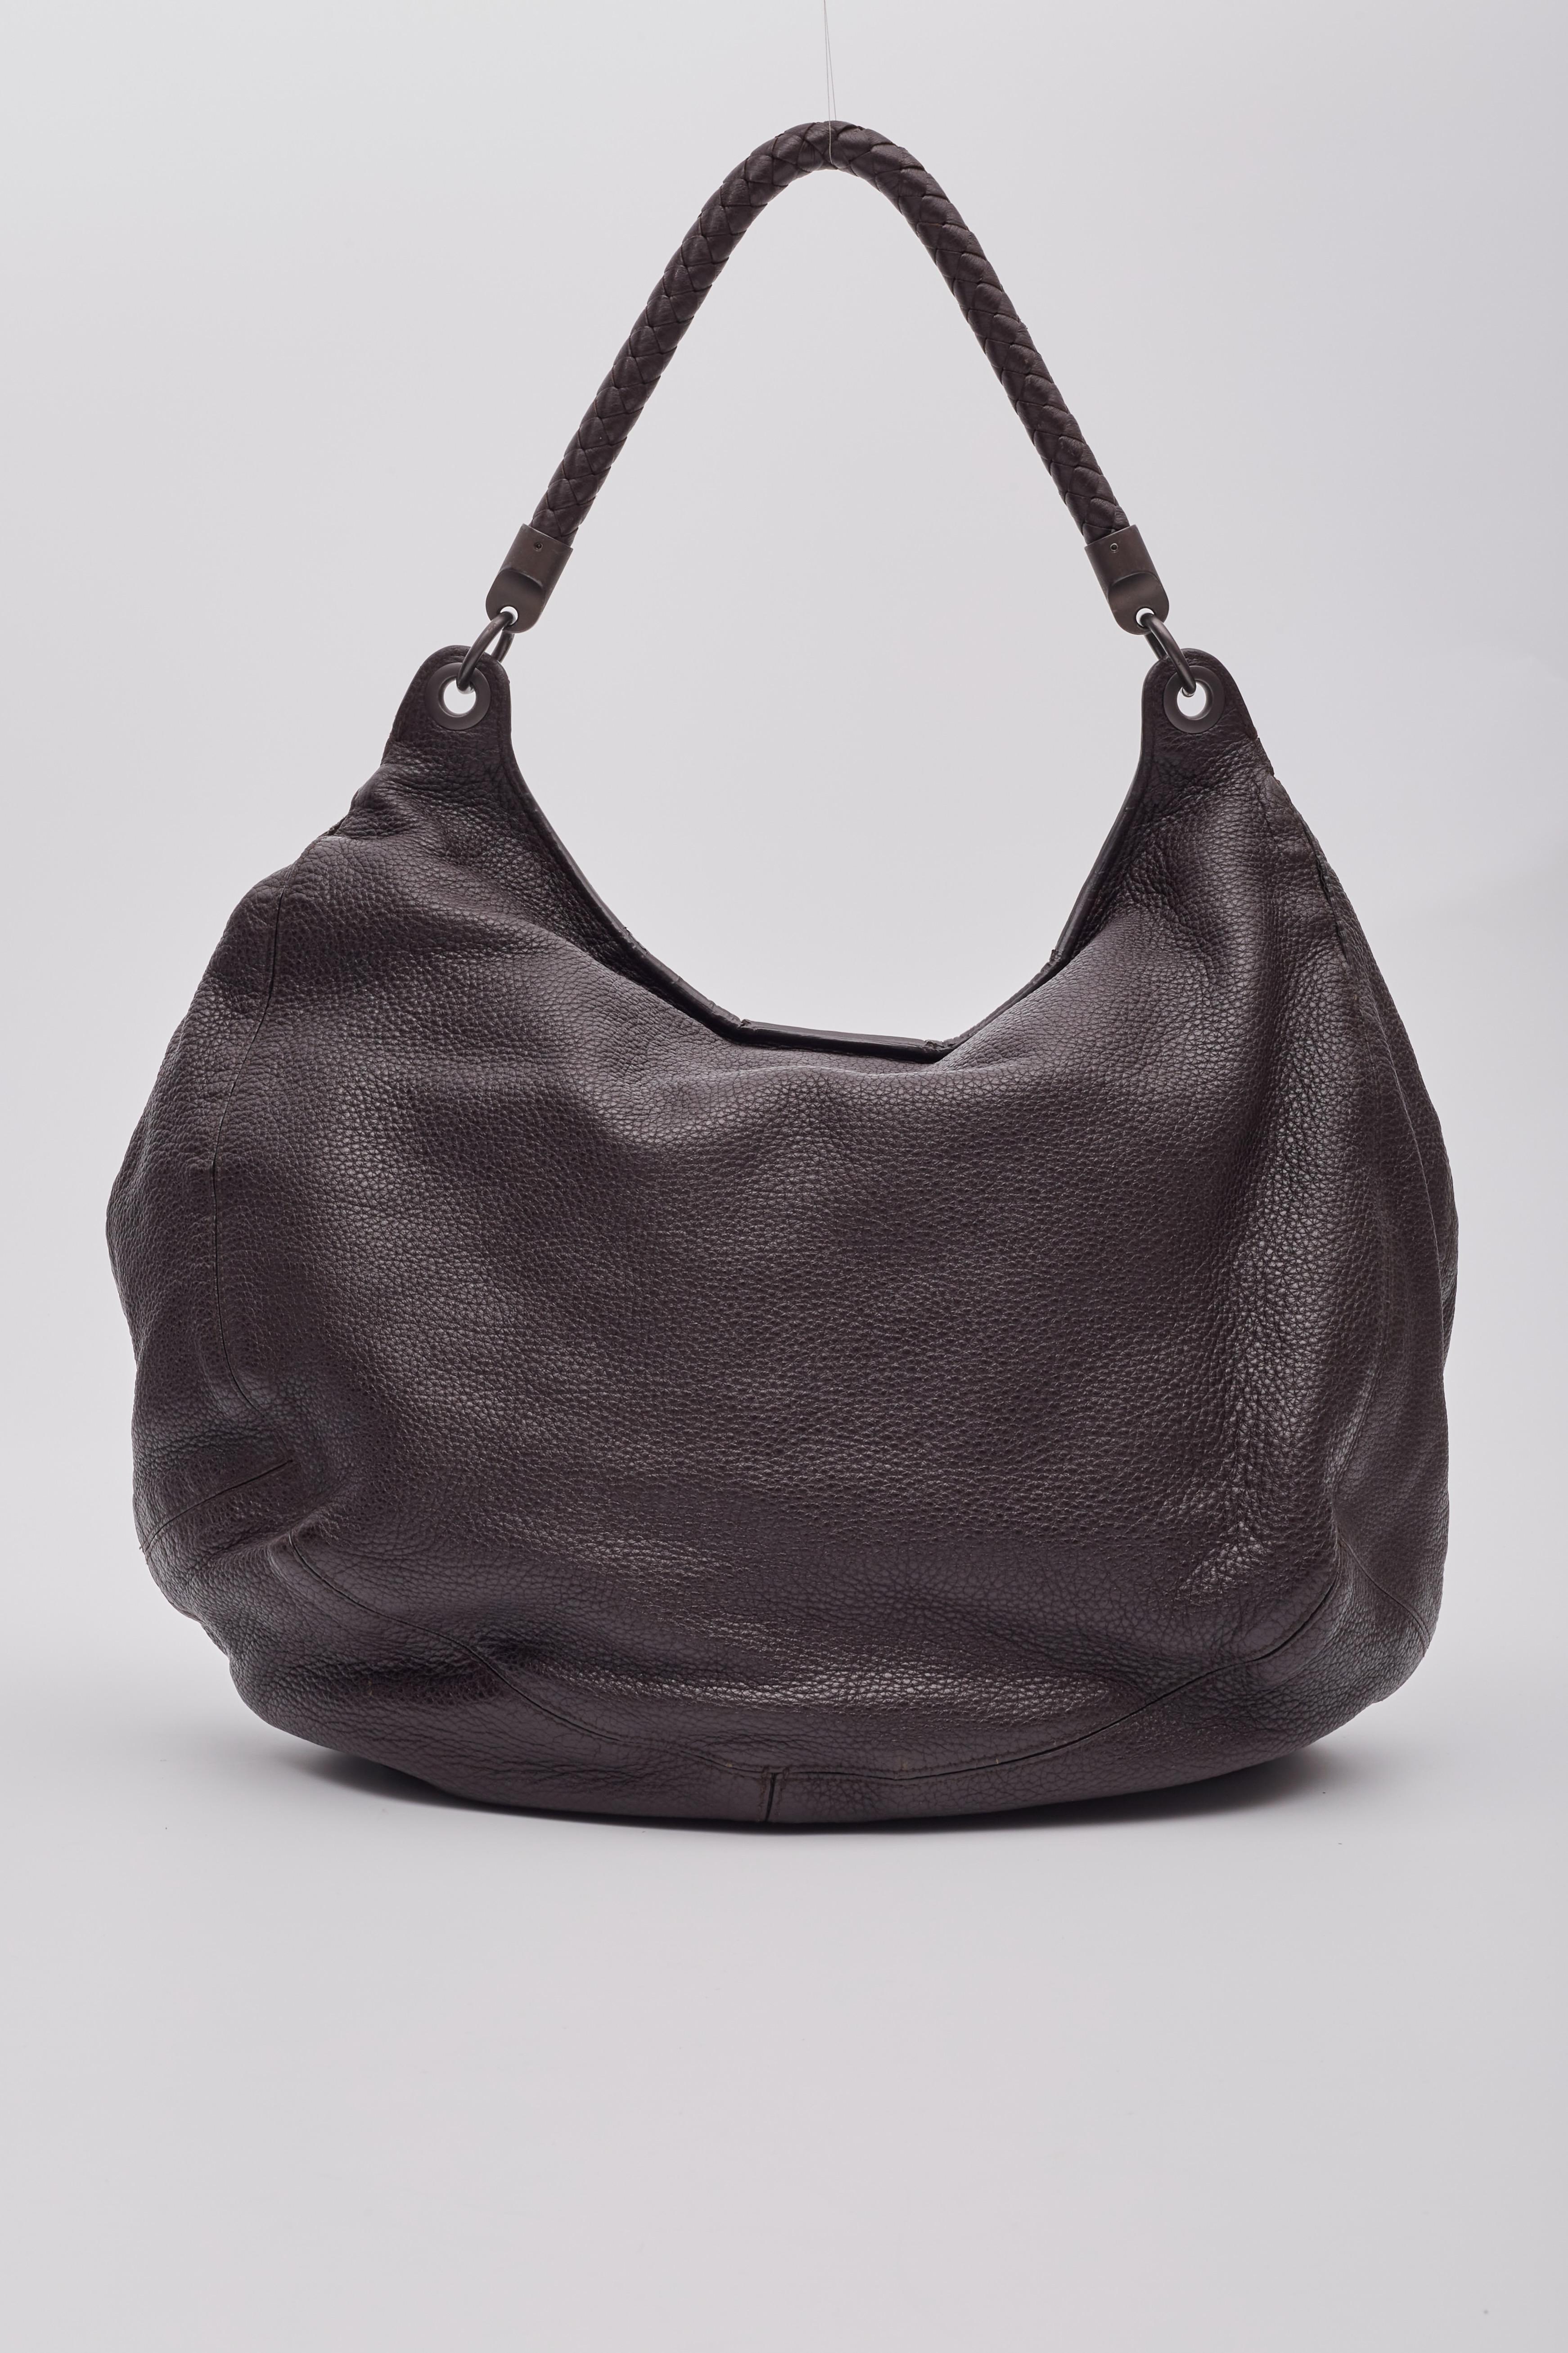 Bottega Veneta Intrecciato Copper Brown Leather Hobo Bag For Sale 1